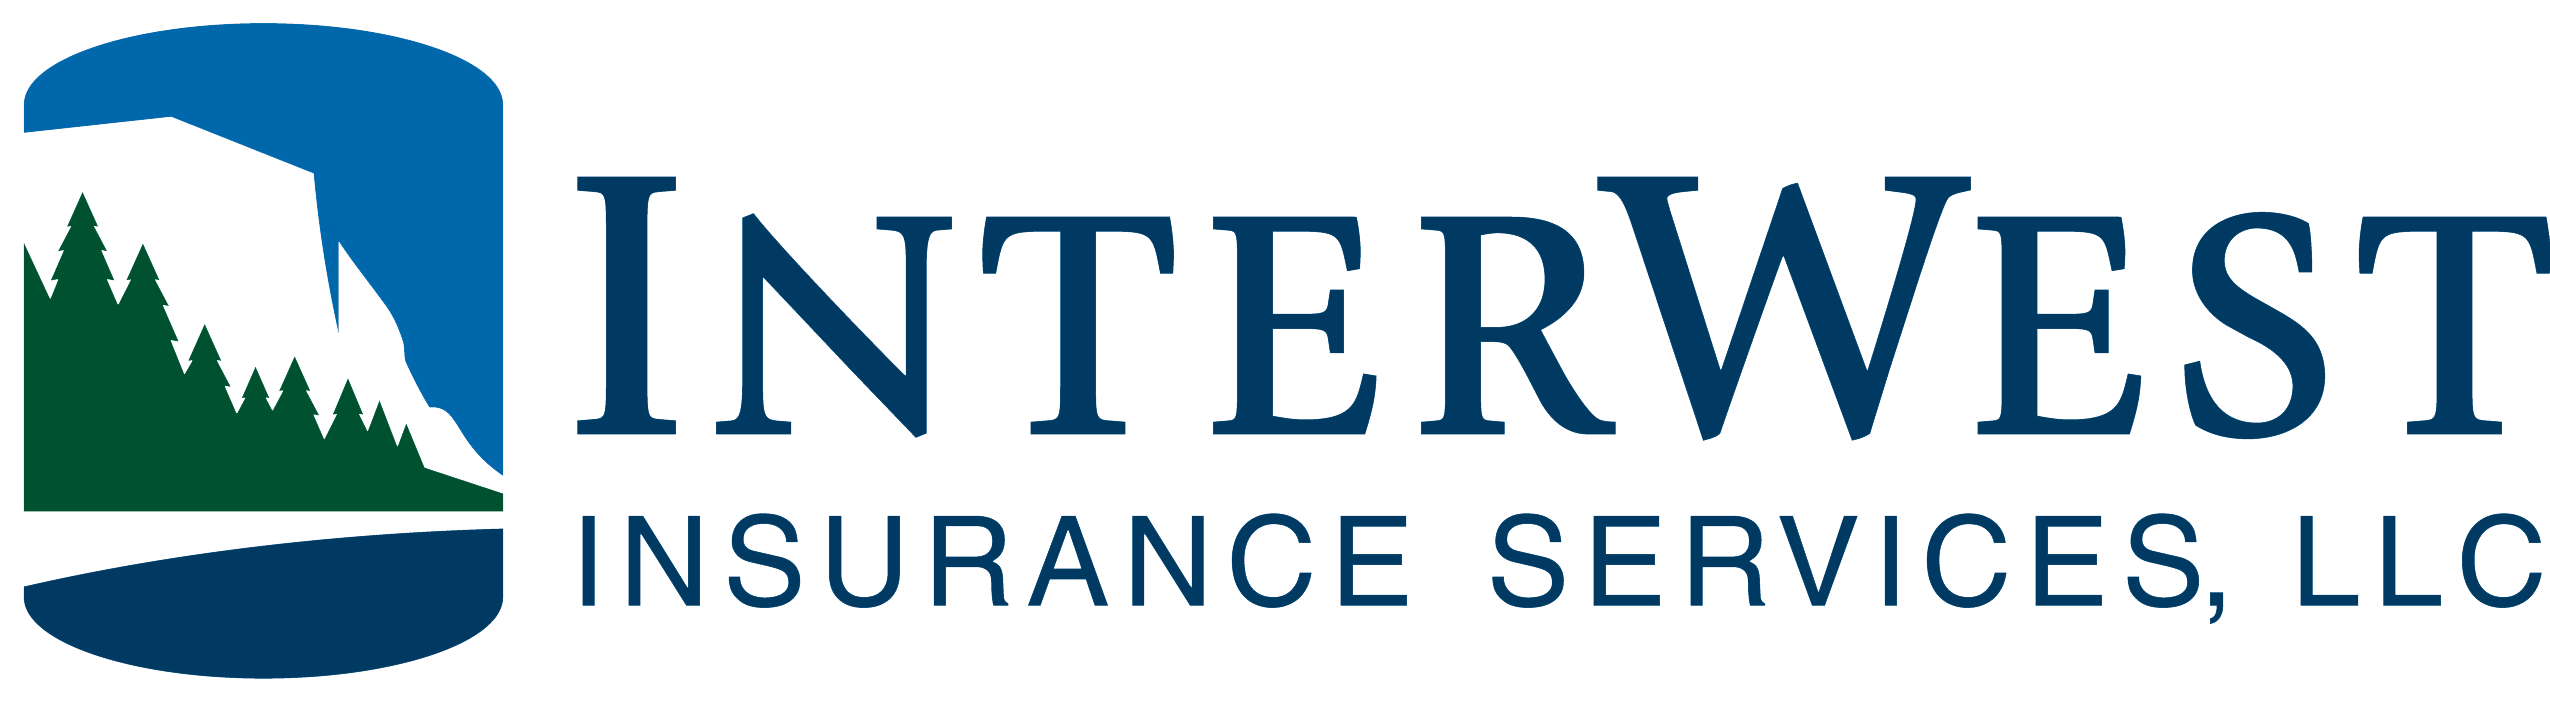 InterWest Insurance